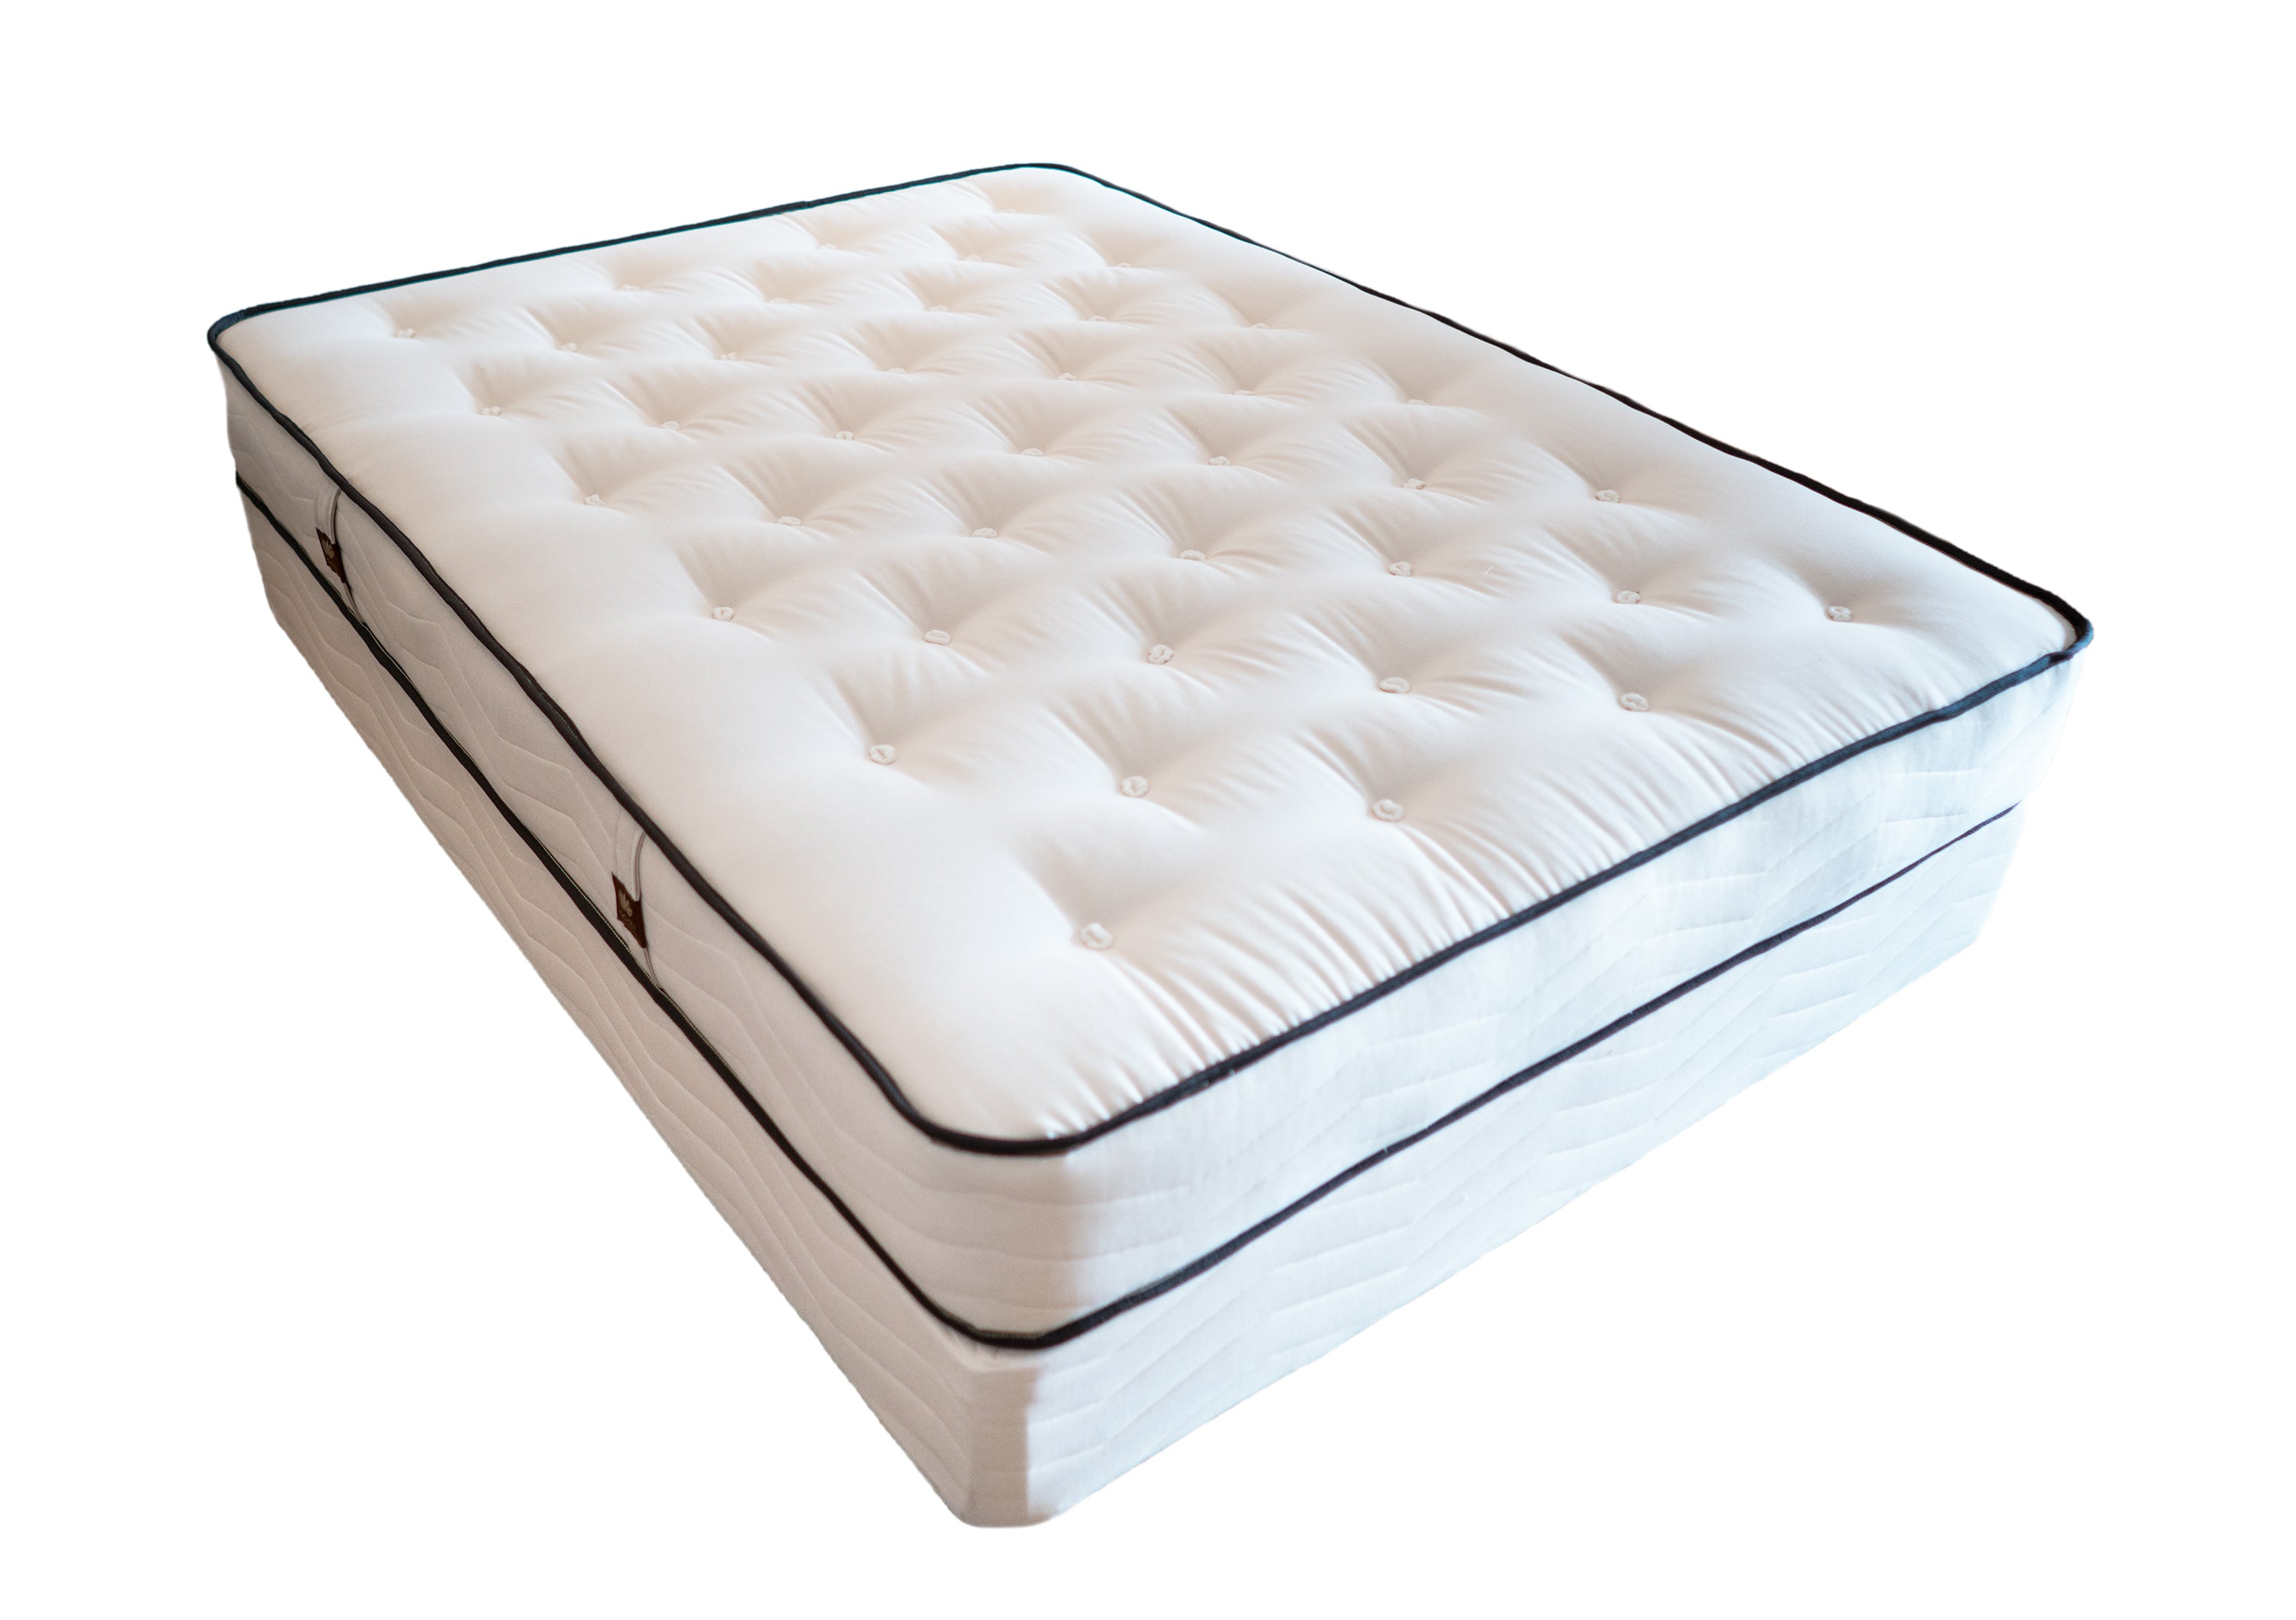 innerspring mattress top layer